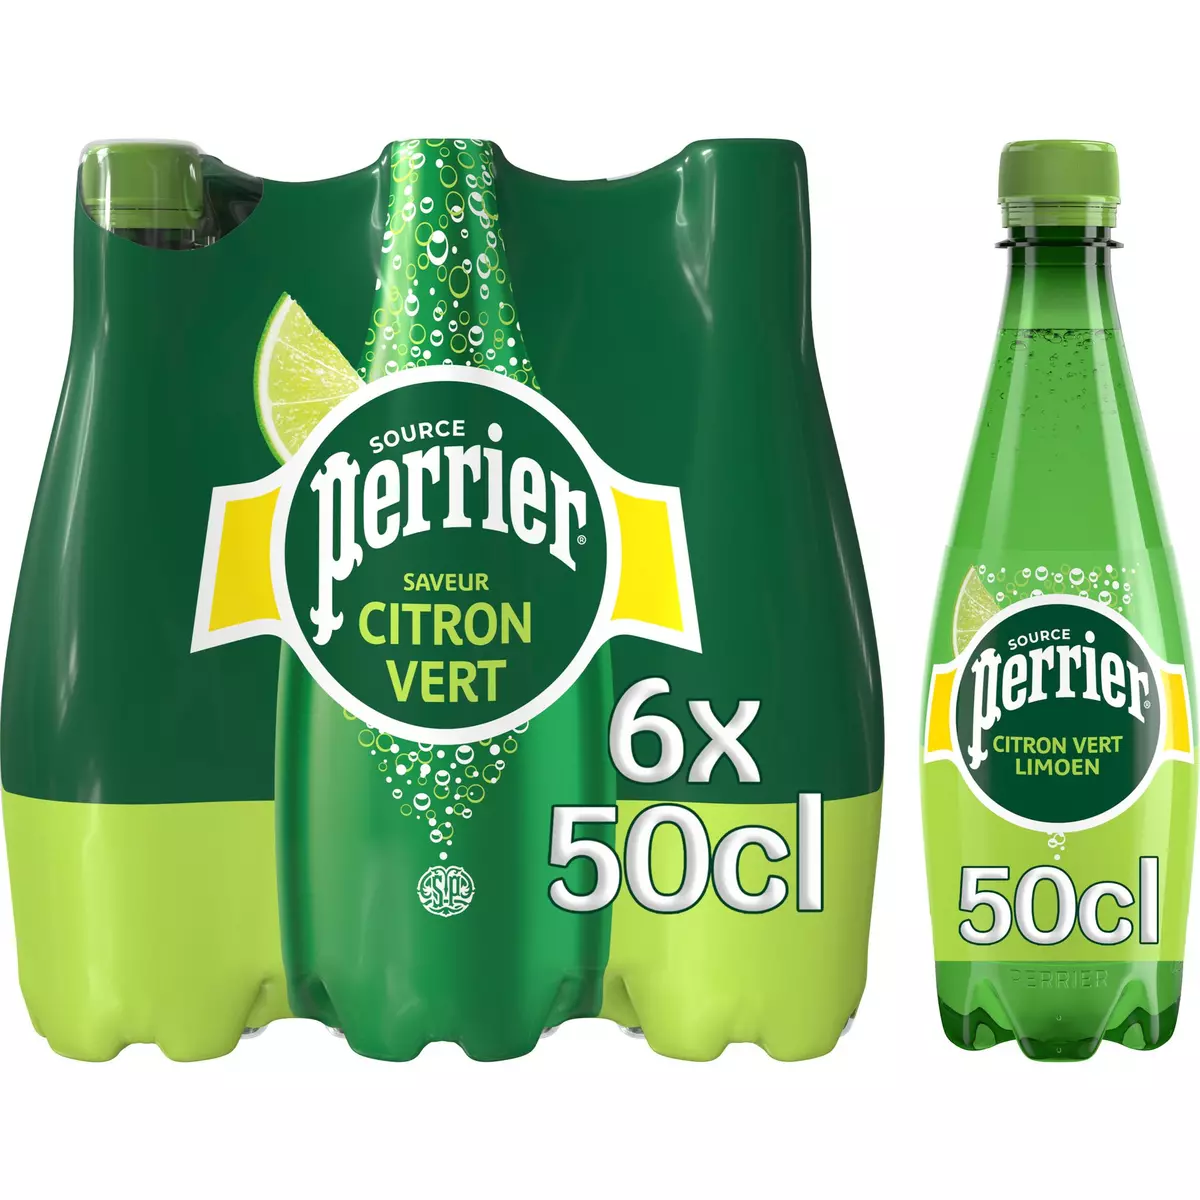 PERRIER Eau gazeuse aromatisée saveur citron vert bouteilles 6x50cl